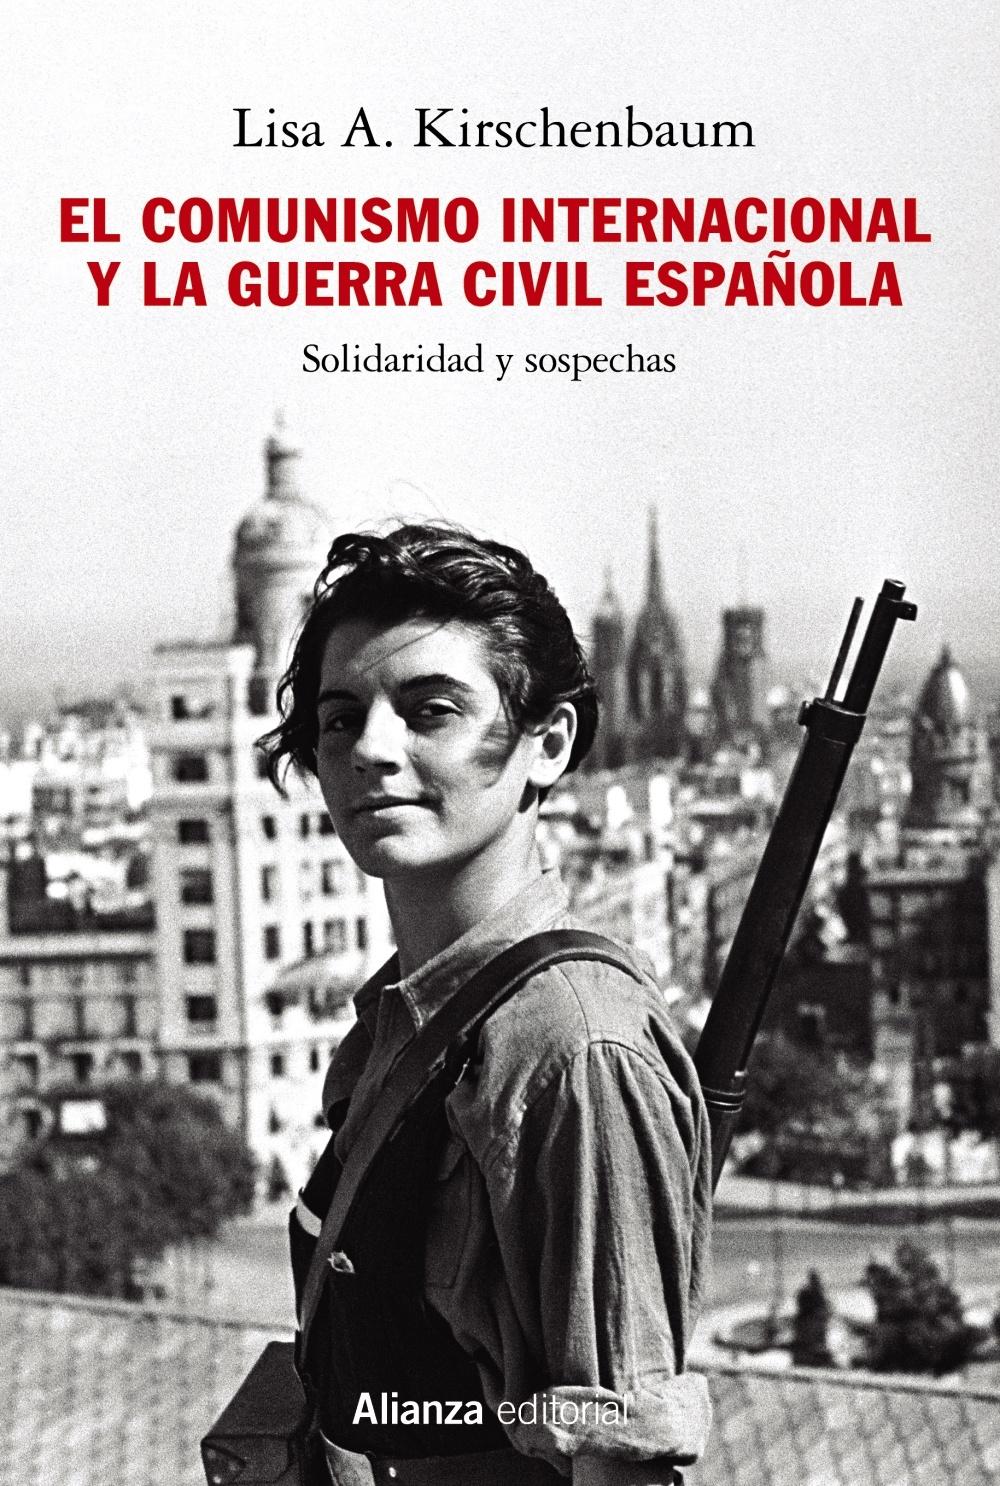 El comunismo internacional y la Guerra Civil española "Solidaridad y sospechas". 